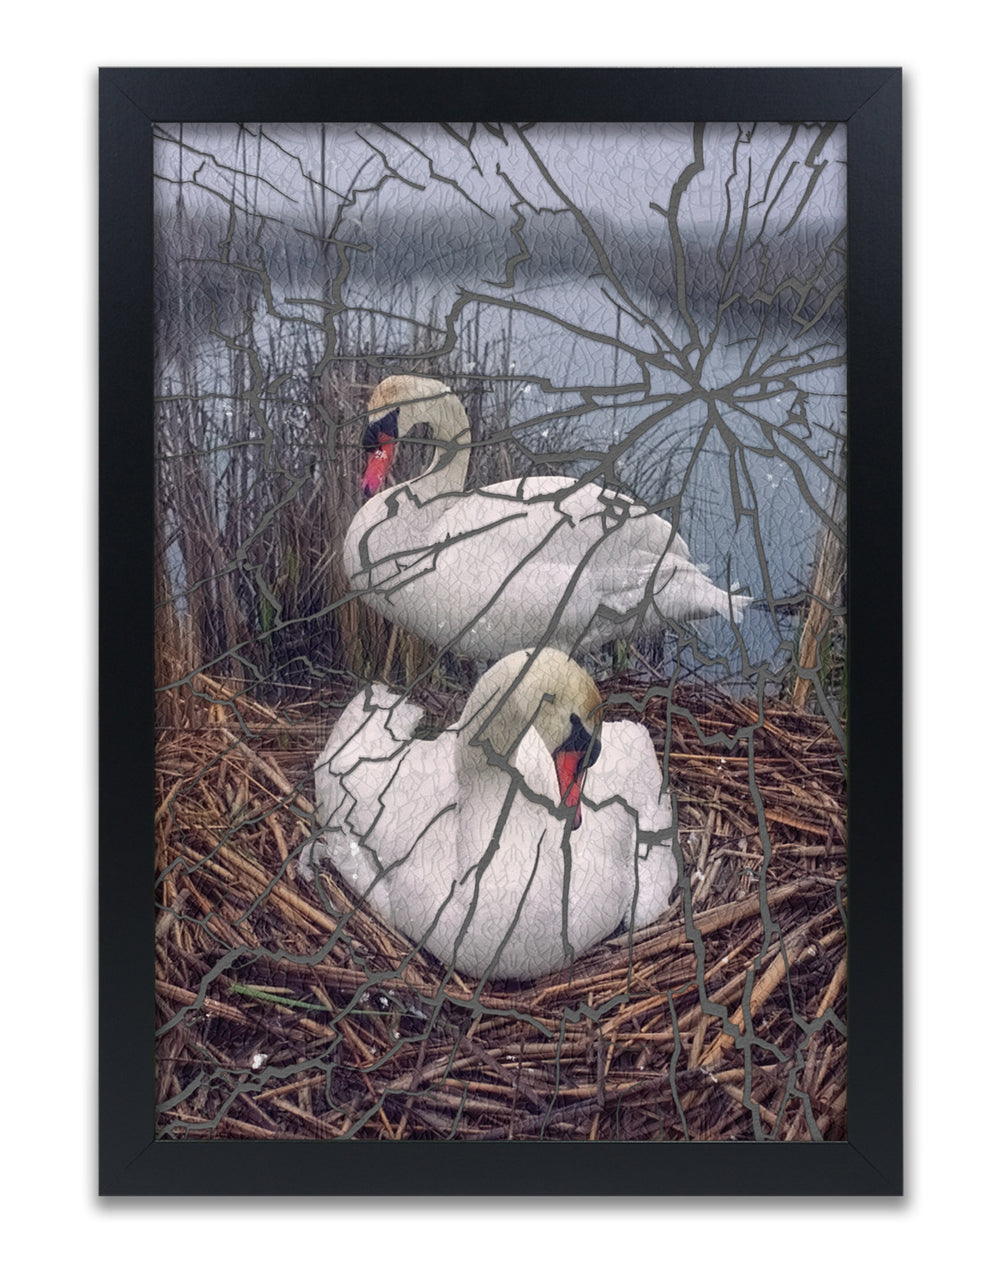 Mute Swans Nesting